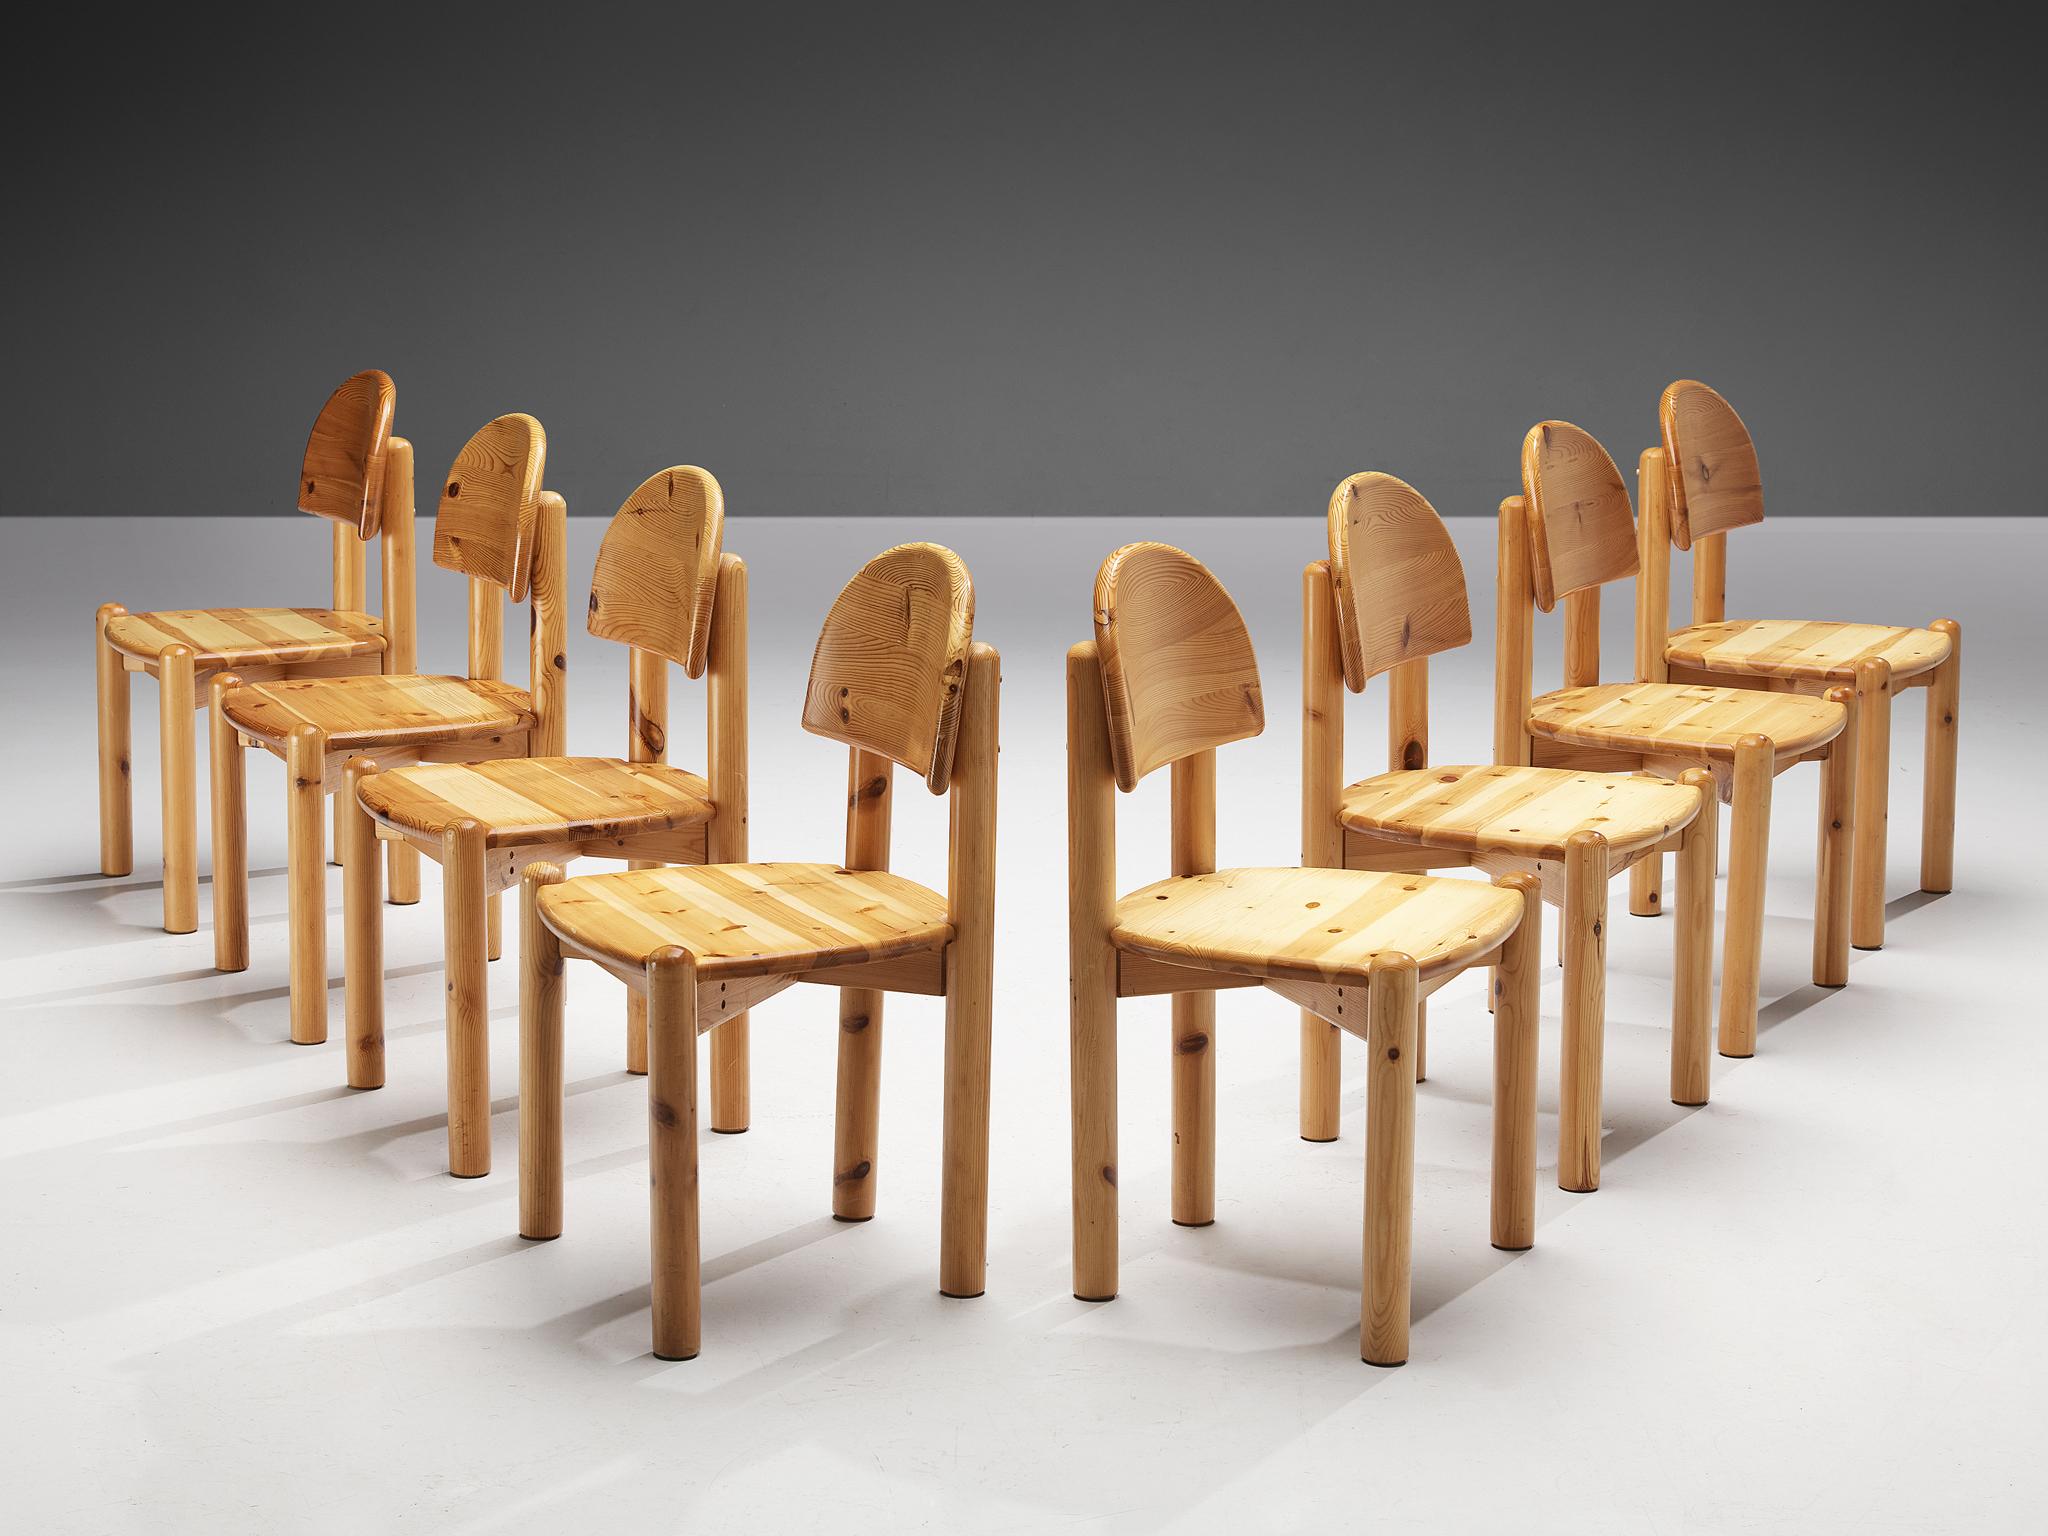 Esszimmerstühle, Kiefer, Dänemark 1970er Jahre. 

Schöne, organische und natürliche Esszimmerstühle aus massivem Kiefernholz. Ein einfaches Design mit einer runden Sitzfläche und Aufmerksamkeit für den natürlichen Ausdruck und die Maserung des